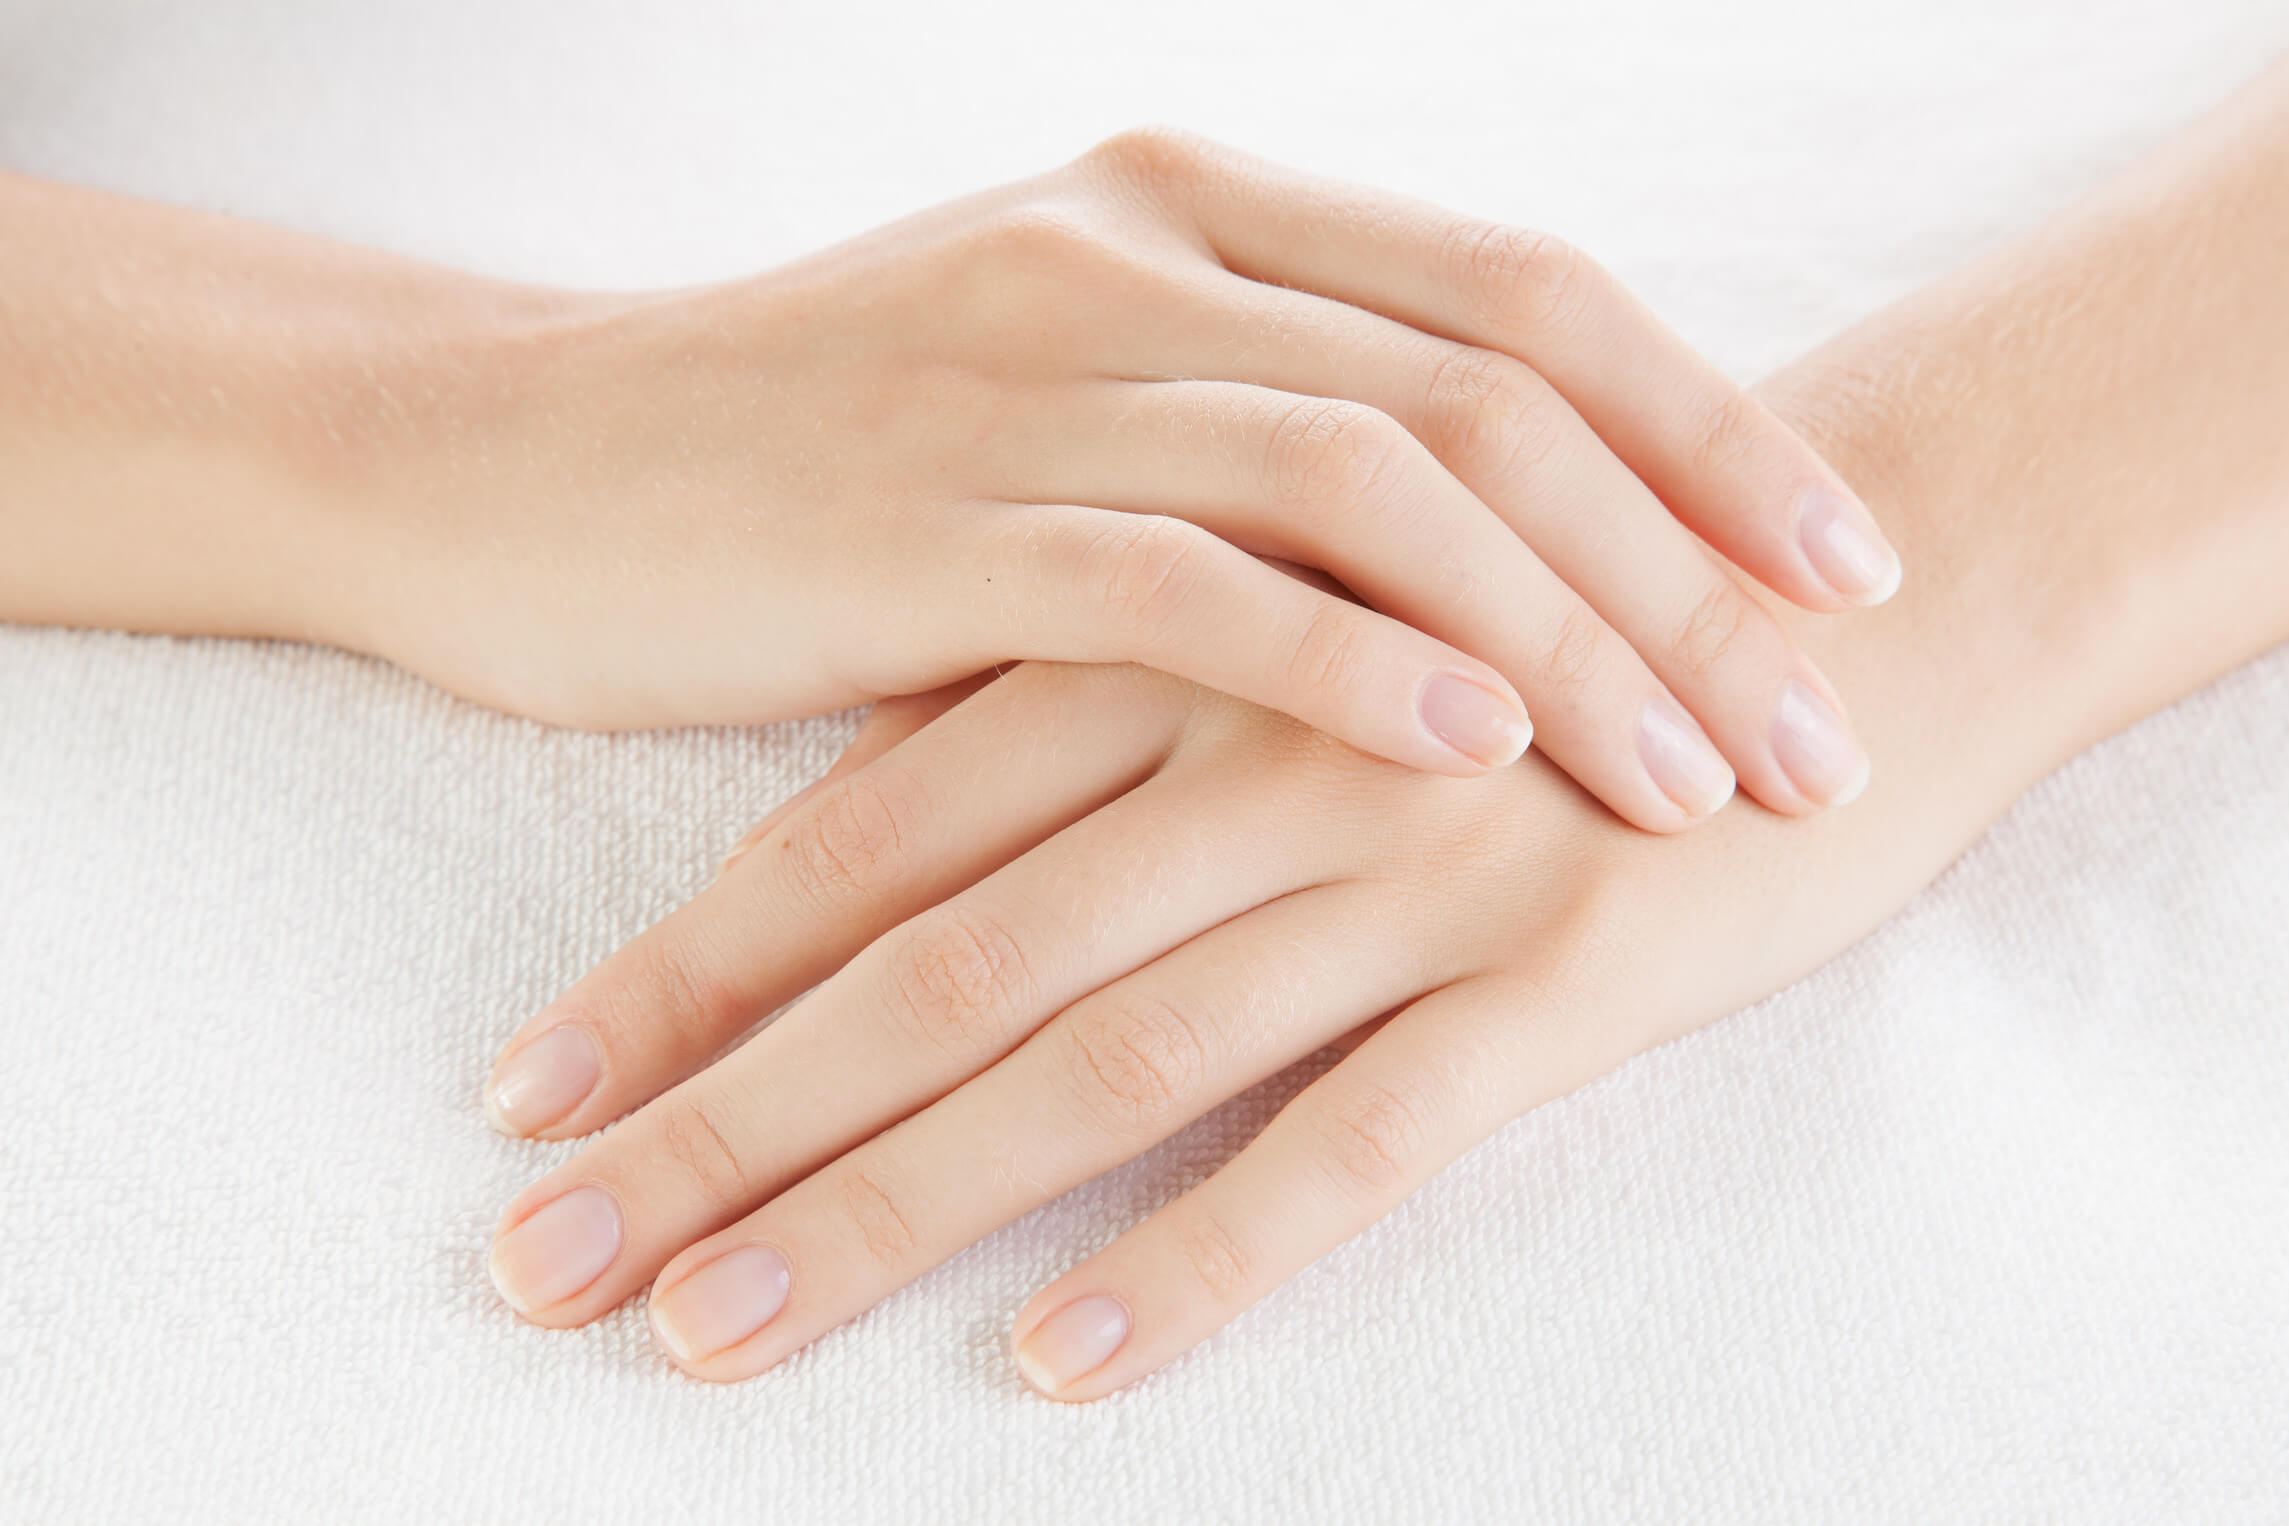 6 Cách chăm sóc da tay giúp đôi tay luôn mềm mại và trẻ trung